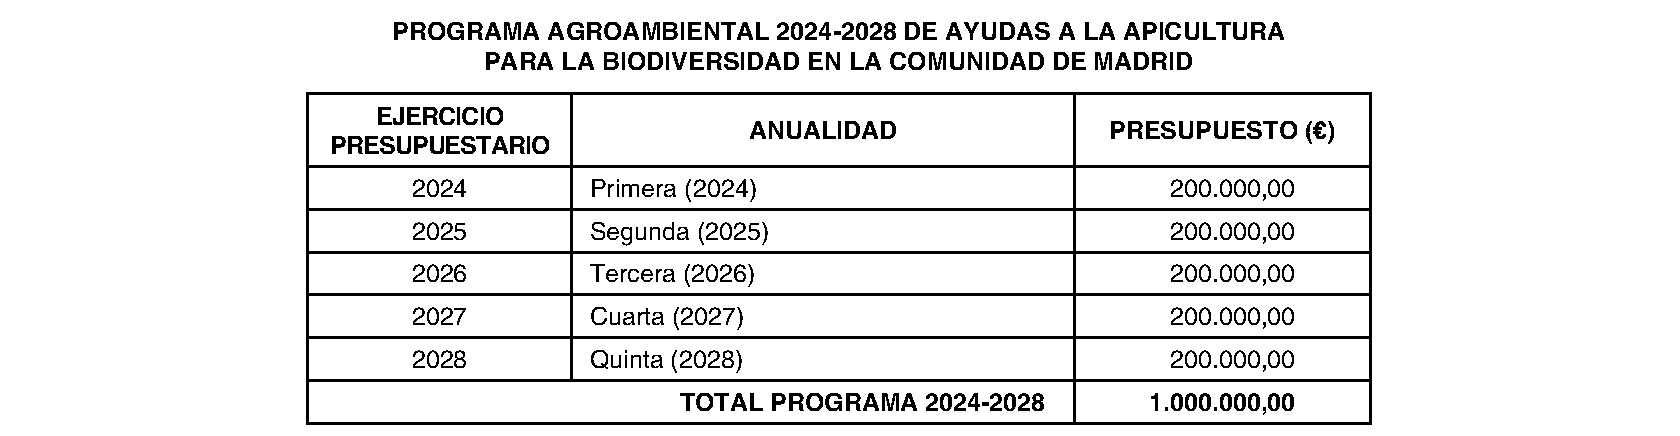 Imagen del artículo ORDEN 1124/2024, de 5 de abril, de la Consejería de Medio Ambiente, Agricultura e Interior, por la que se establecen las bases reguladoras de las ayudas a la apicultura para la biodiversidad en la Comunidad de Madrid, cofinanciadas por el Fondo Europeo Agrícola de Desarrollo Rural (FEADER) y la Administración General del Estado en el marco del Plan Estratégico de la Política Agraria Común para el período 2023-2027 y se aprueba la convocatoria para el año 2024.